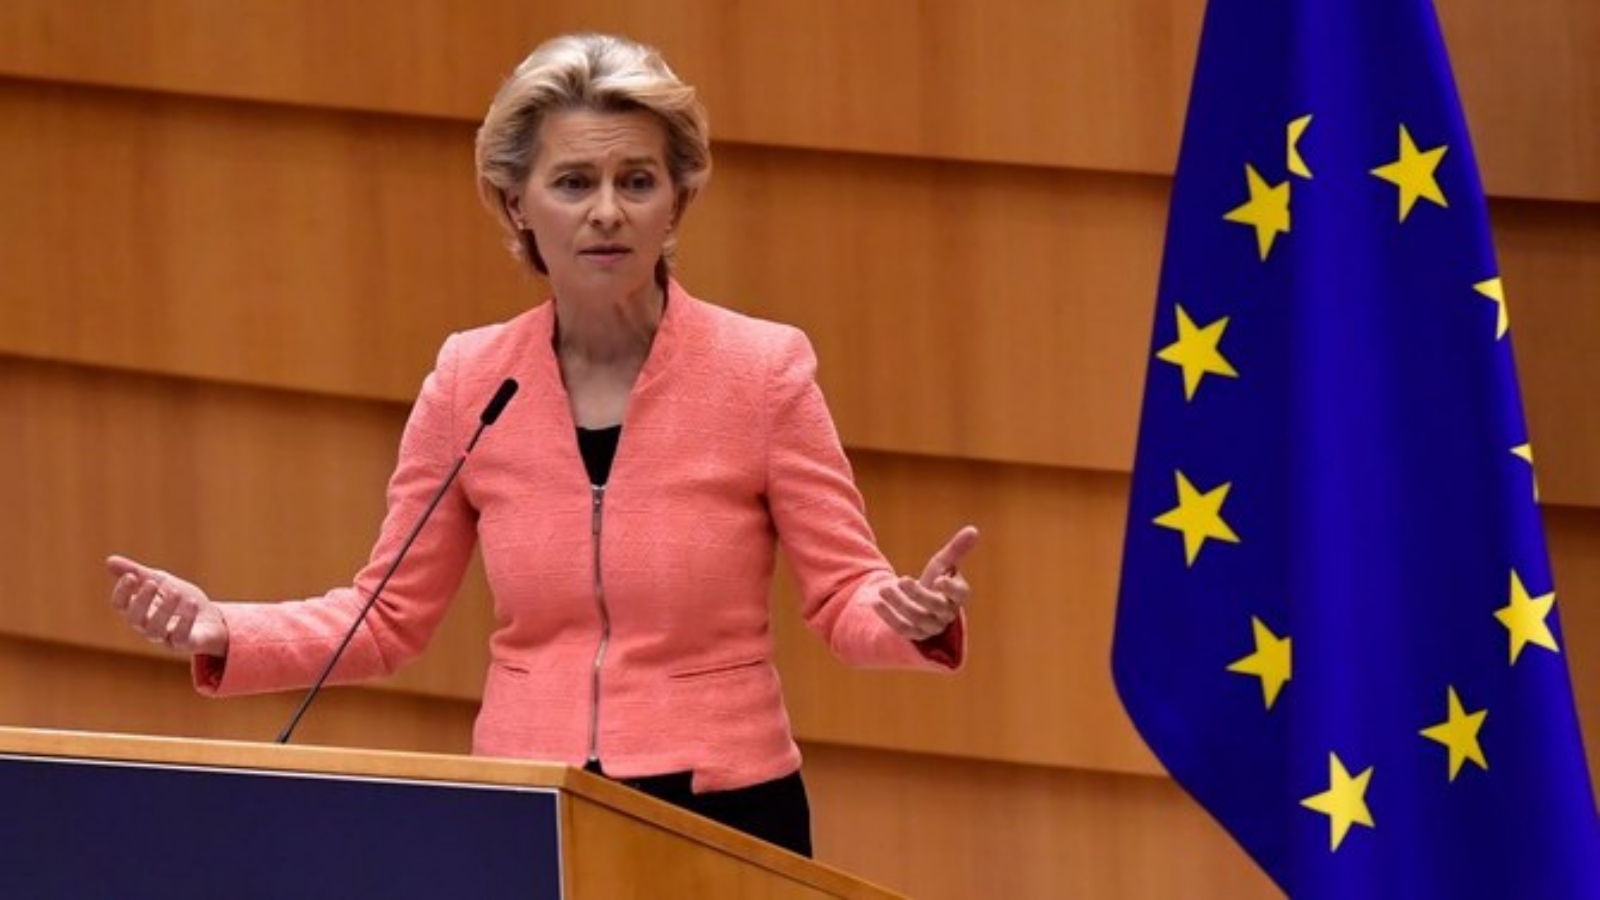 رئيسة المفوضية الأوروبية أورسولا فون دير لايين في أول خطاب لها عن حالة الاتحاد خلال جلسة عامة في برلمان الاتحاد الأوروبي في بروكسل. بتاريخ 16 أيلول/ سبتمبر 2020.